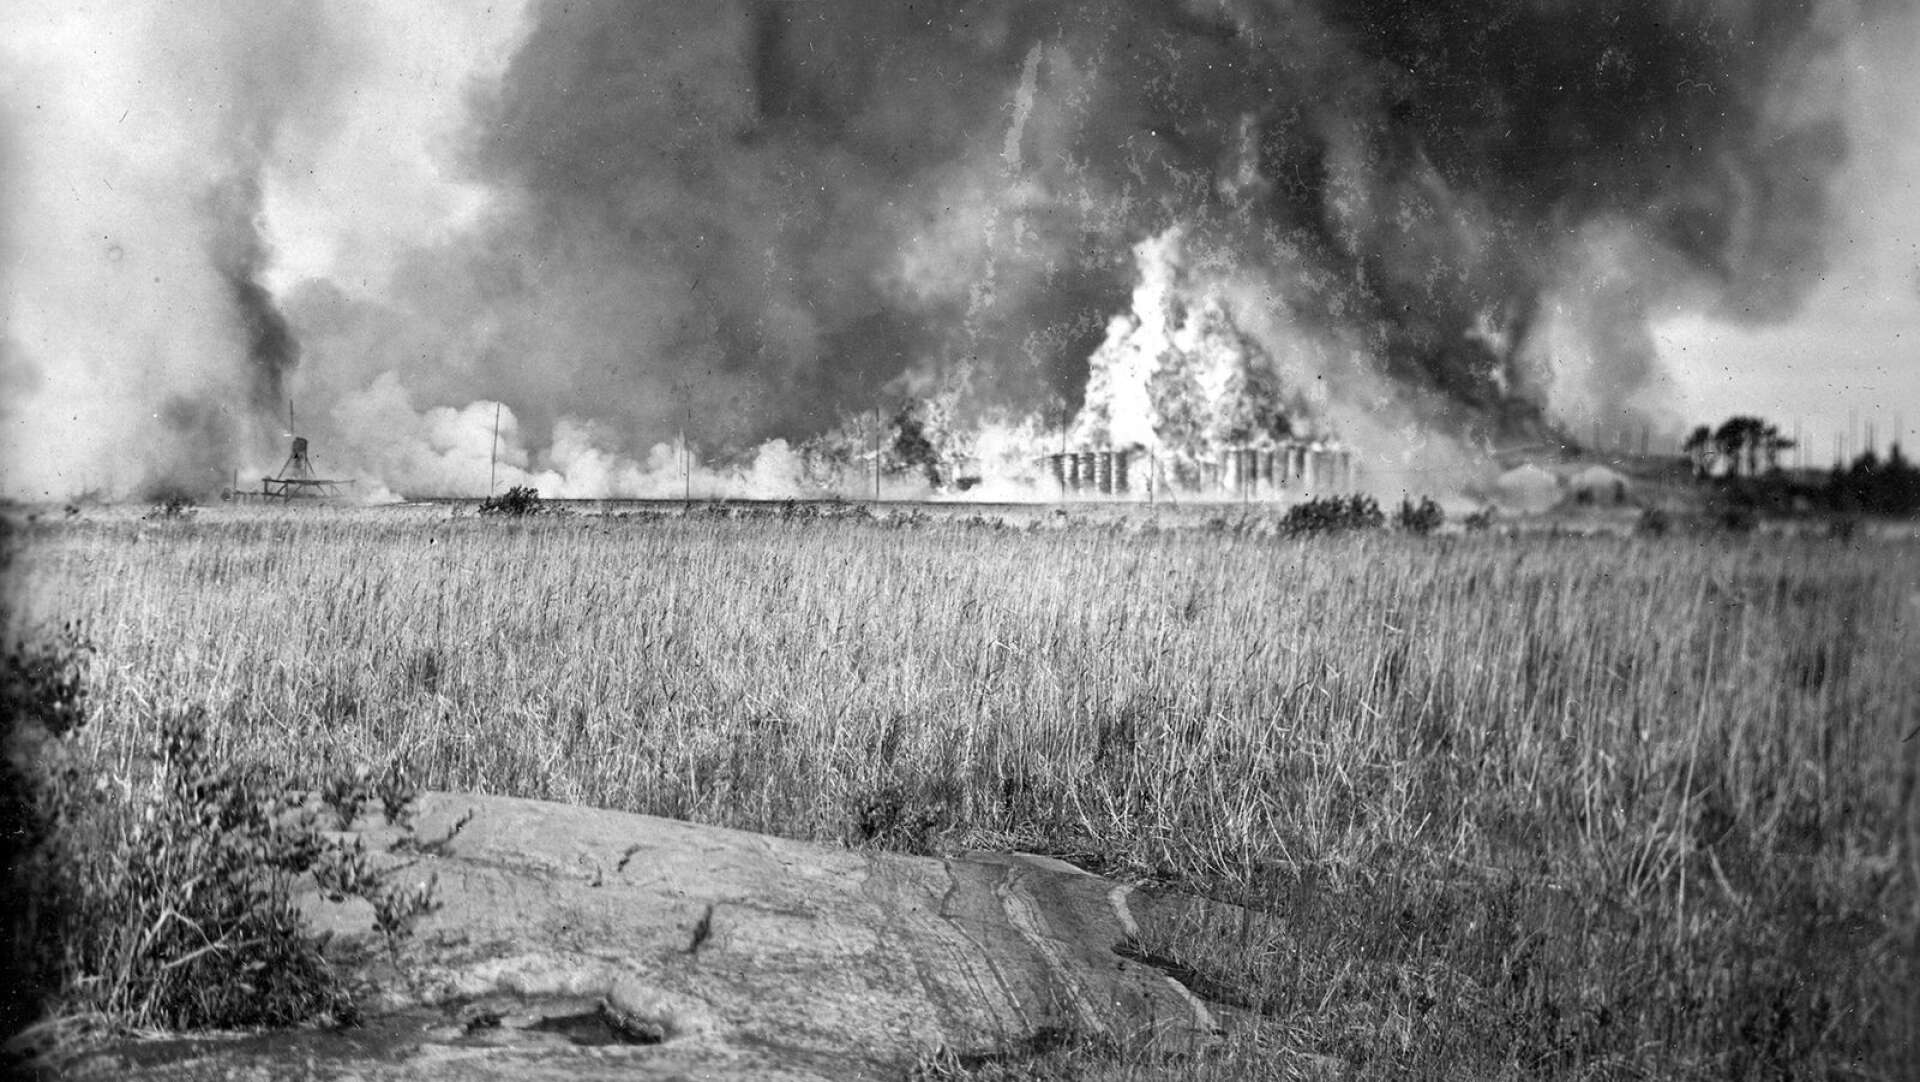 Uddeholm AB:s brädgård på Vidön totalförstörs av eld den 3 juli 1923. Ett tusental man deltar i släckningen som omfattar en yta av 400x500m. 